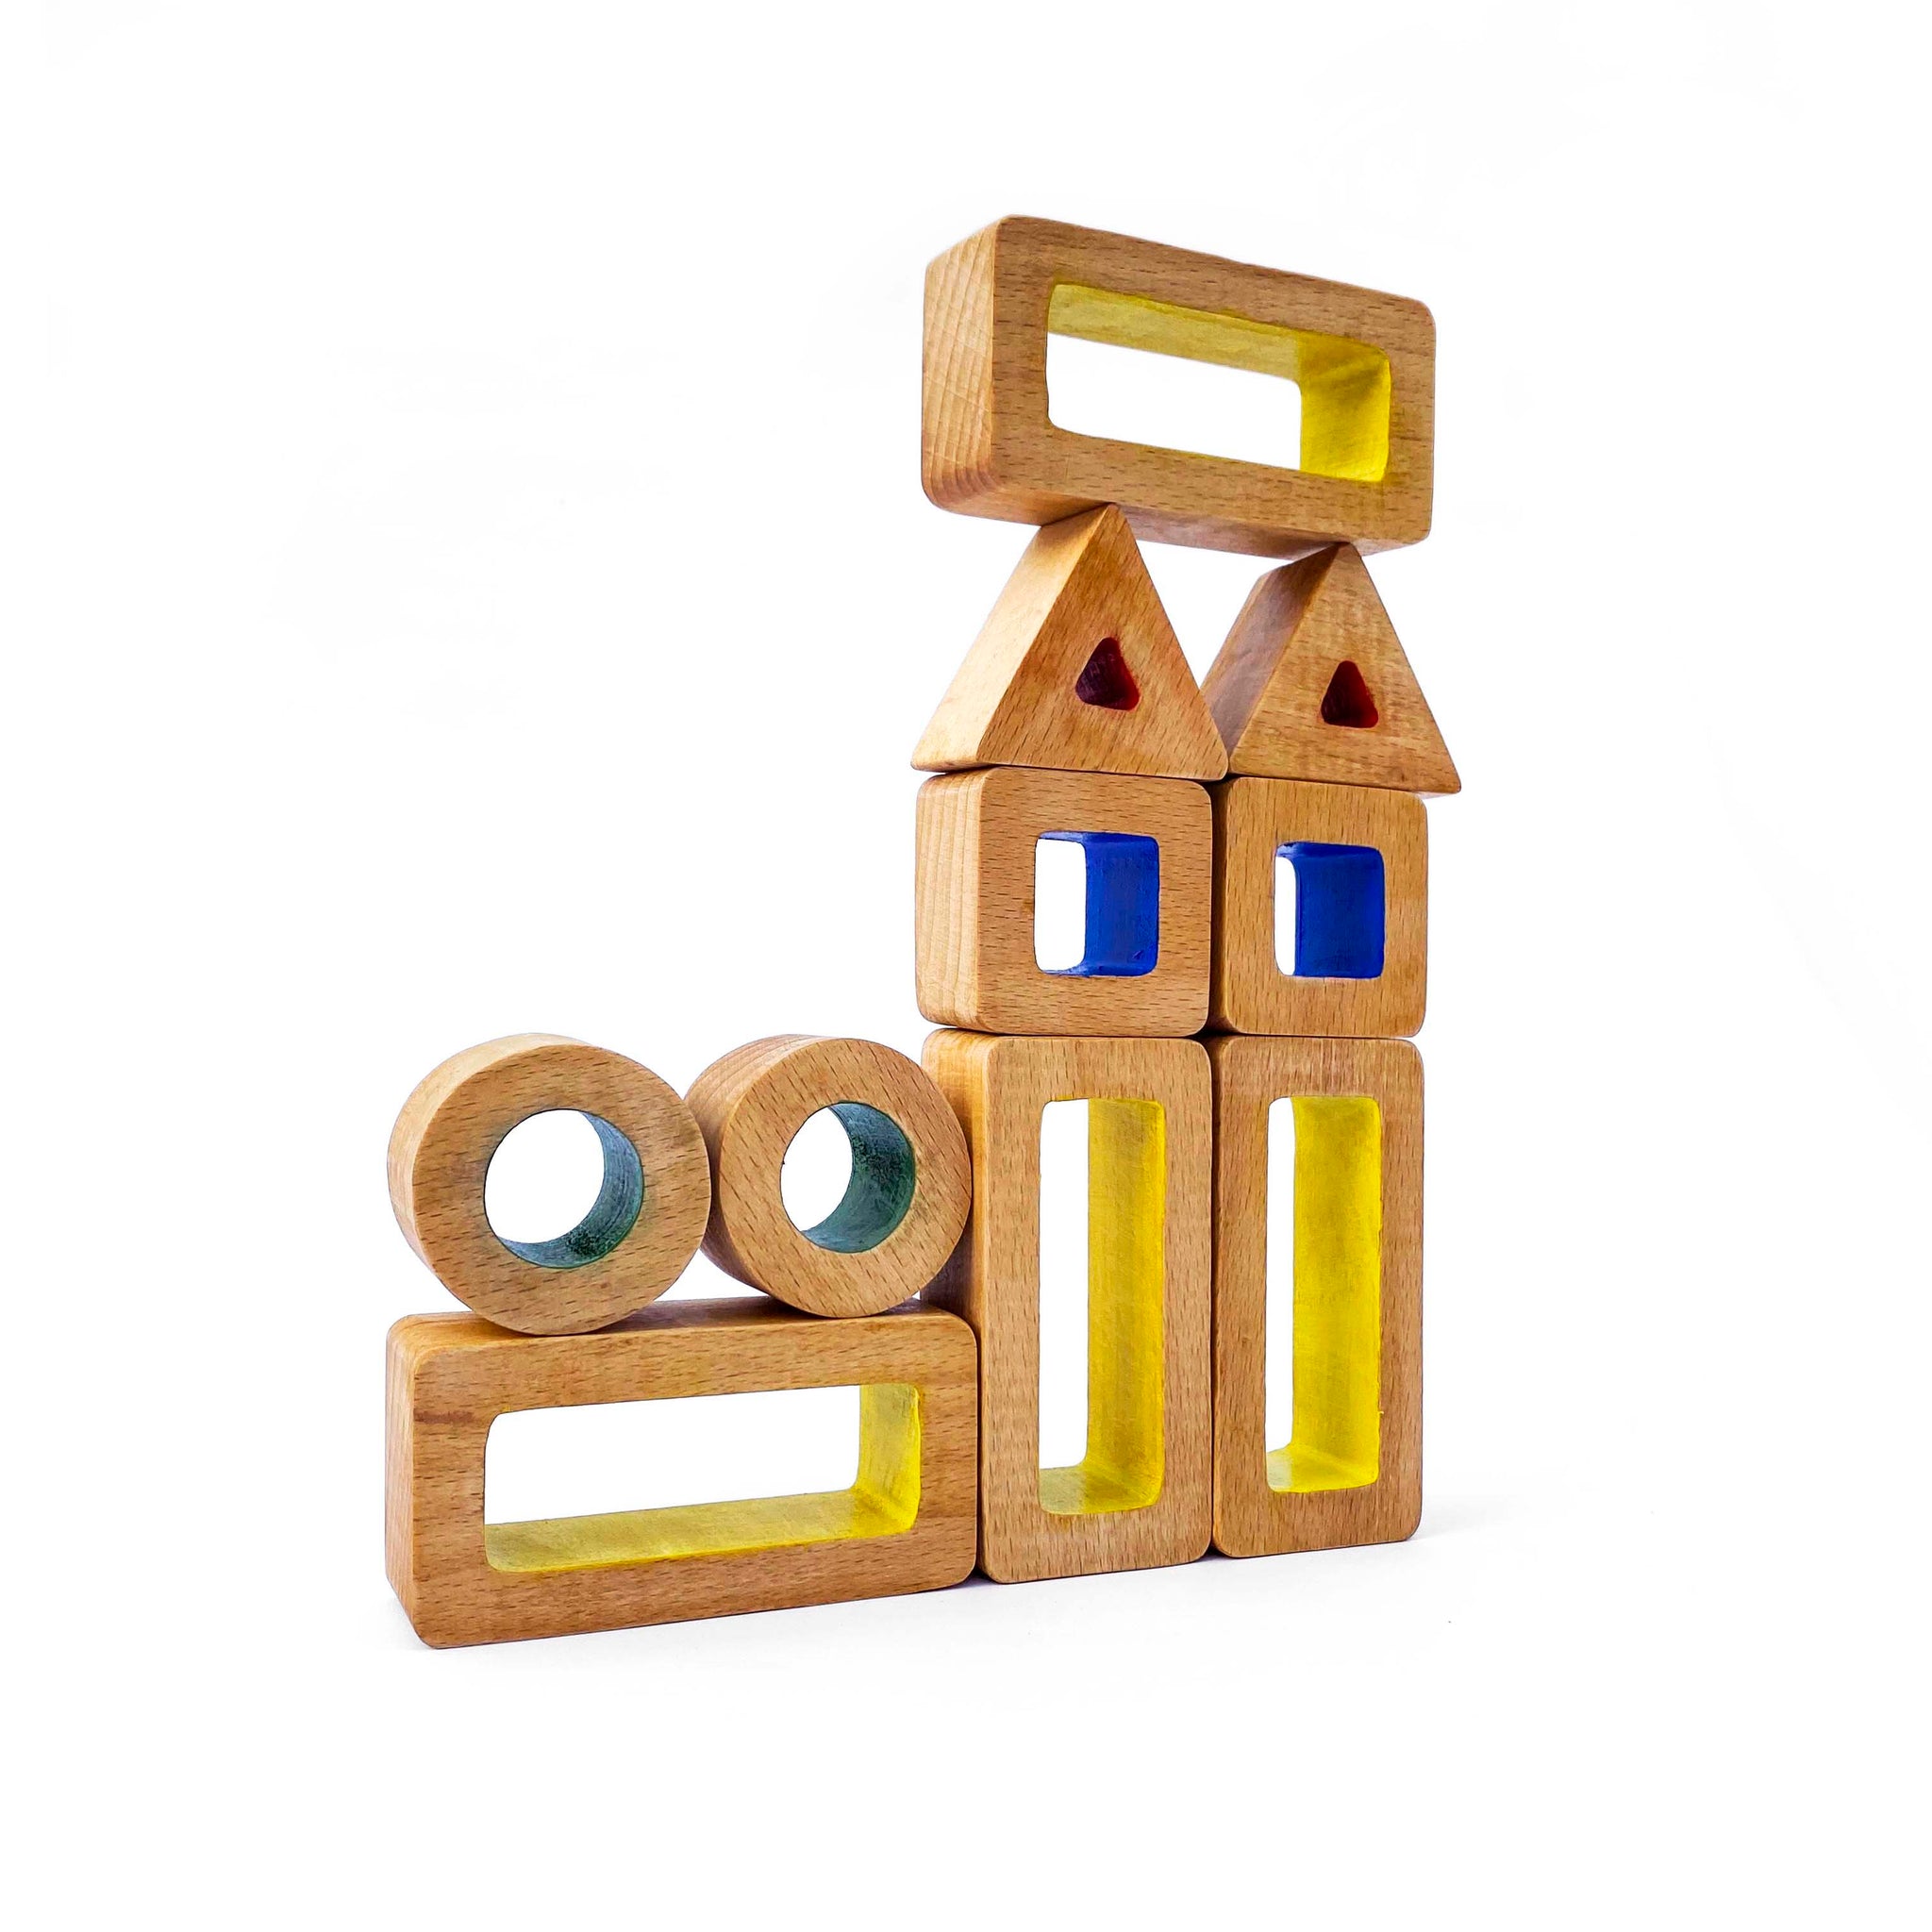 Udo building blocks